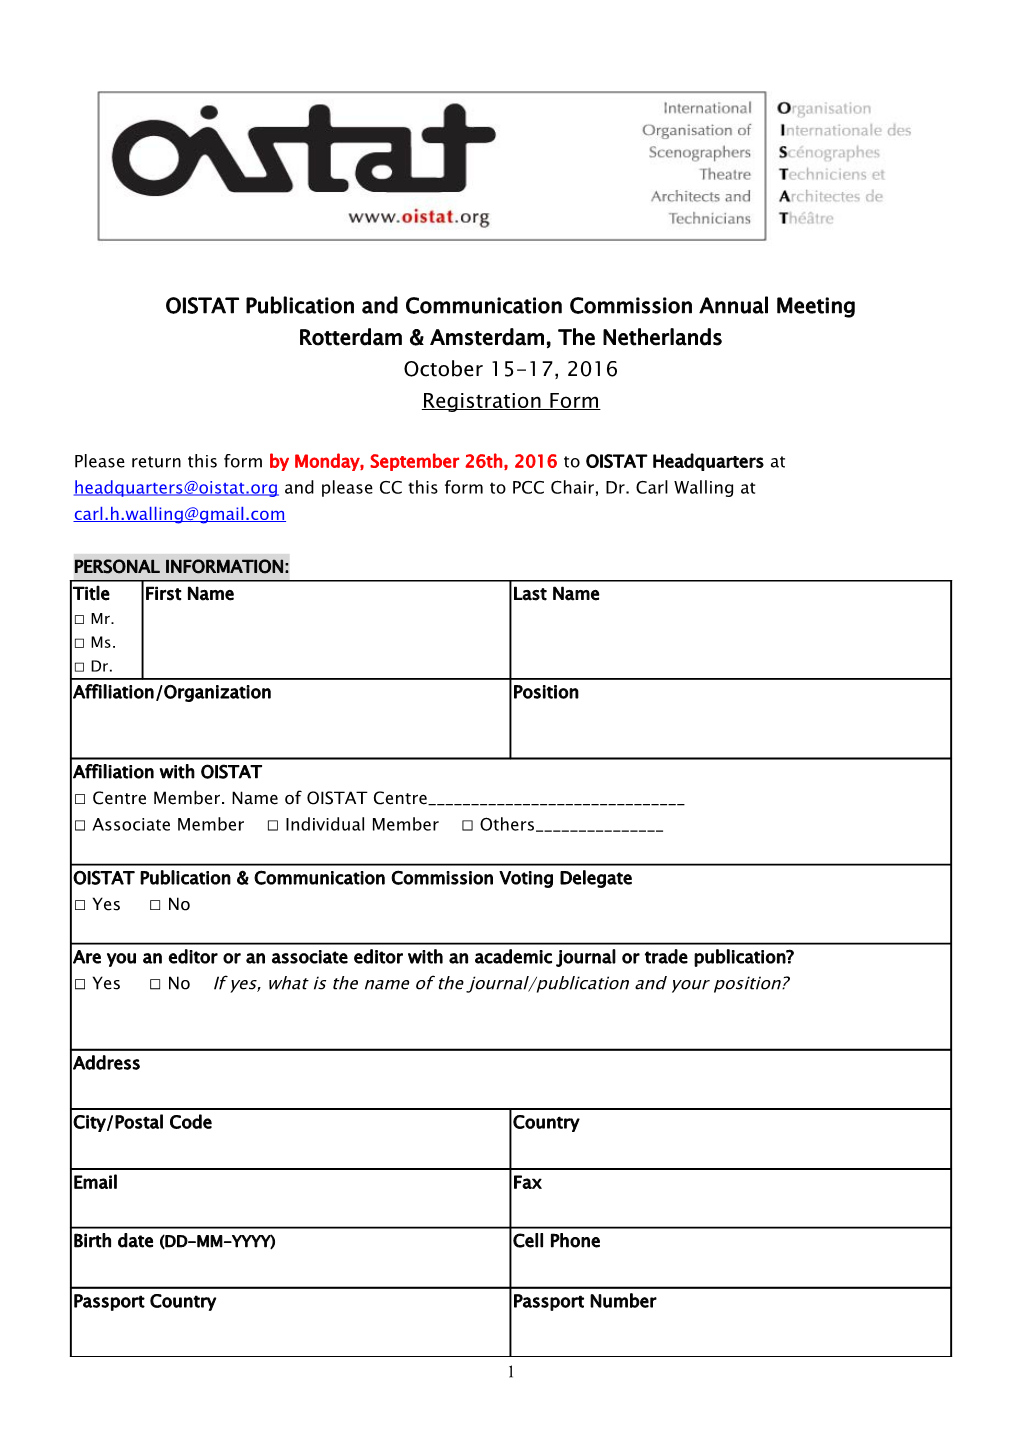 Registration Form for OISTAT World Congress